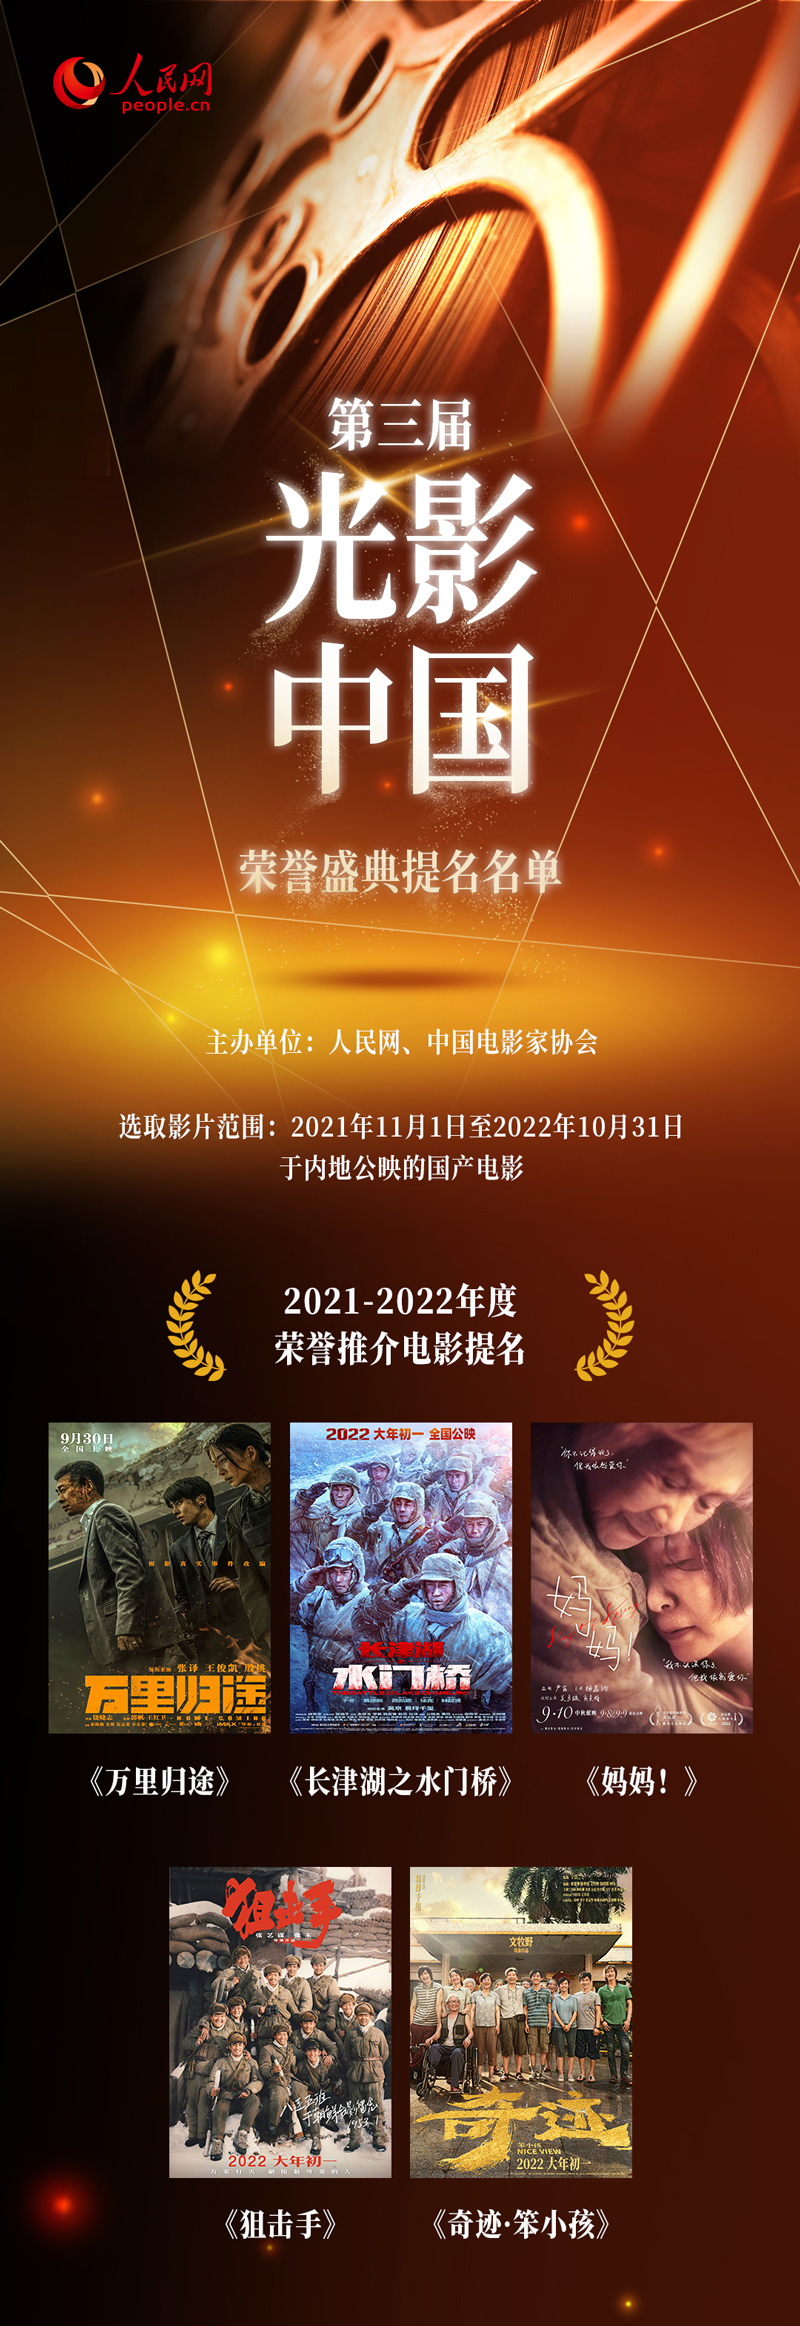 第三届“光影中国”荣誉盛典即将举办 提名名单揭晓